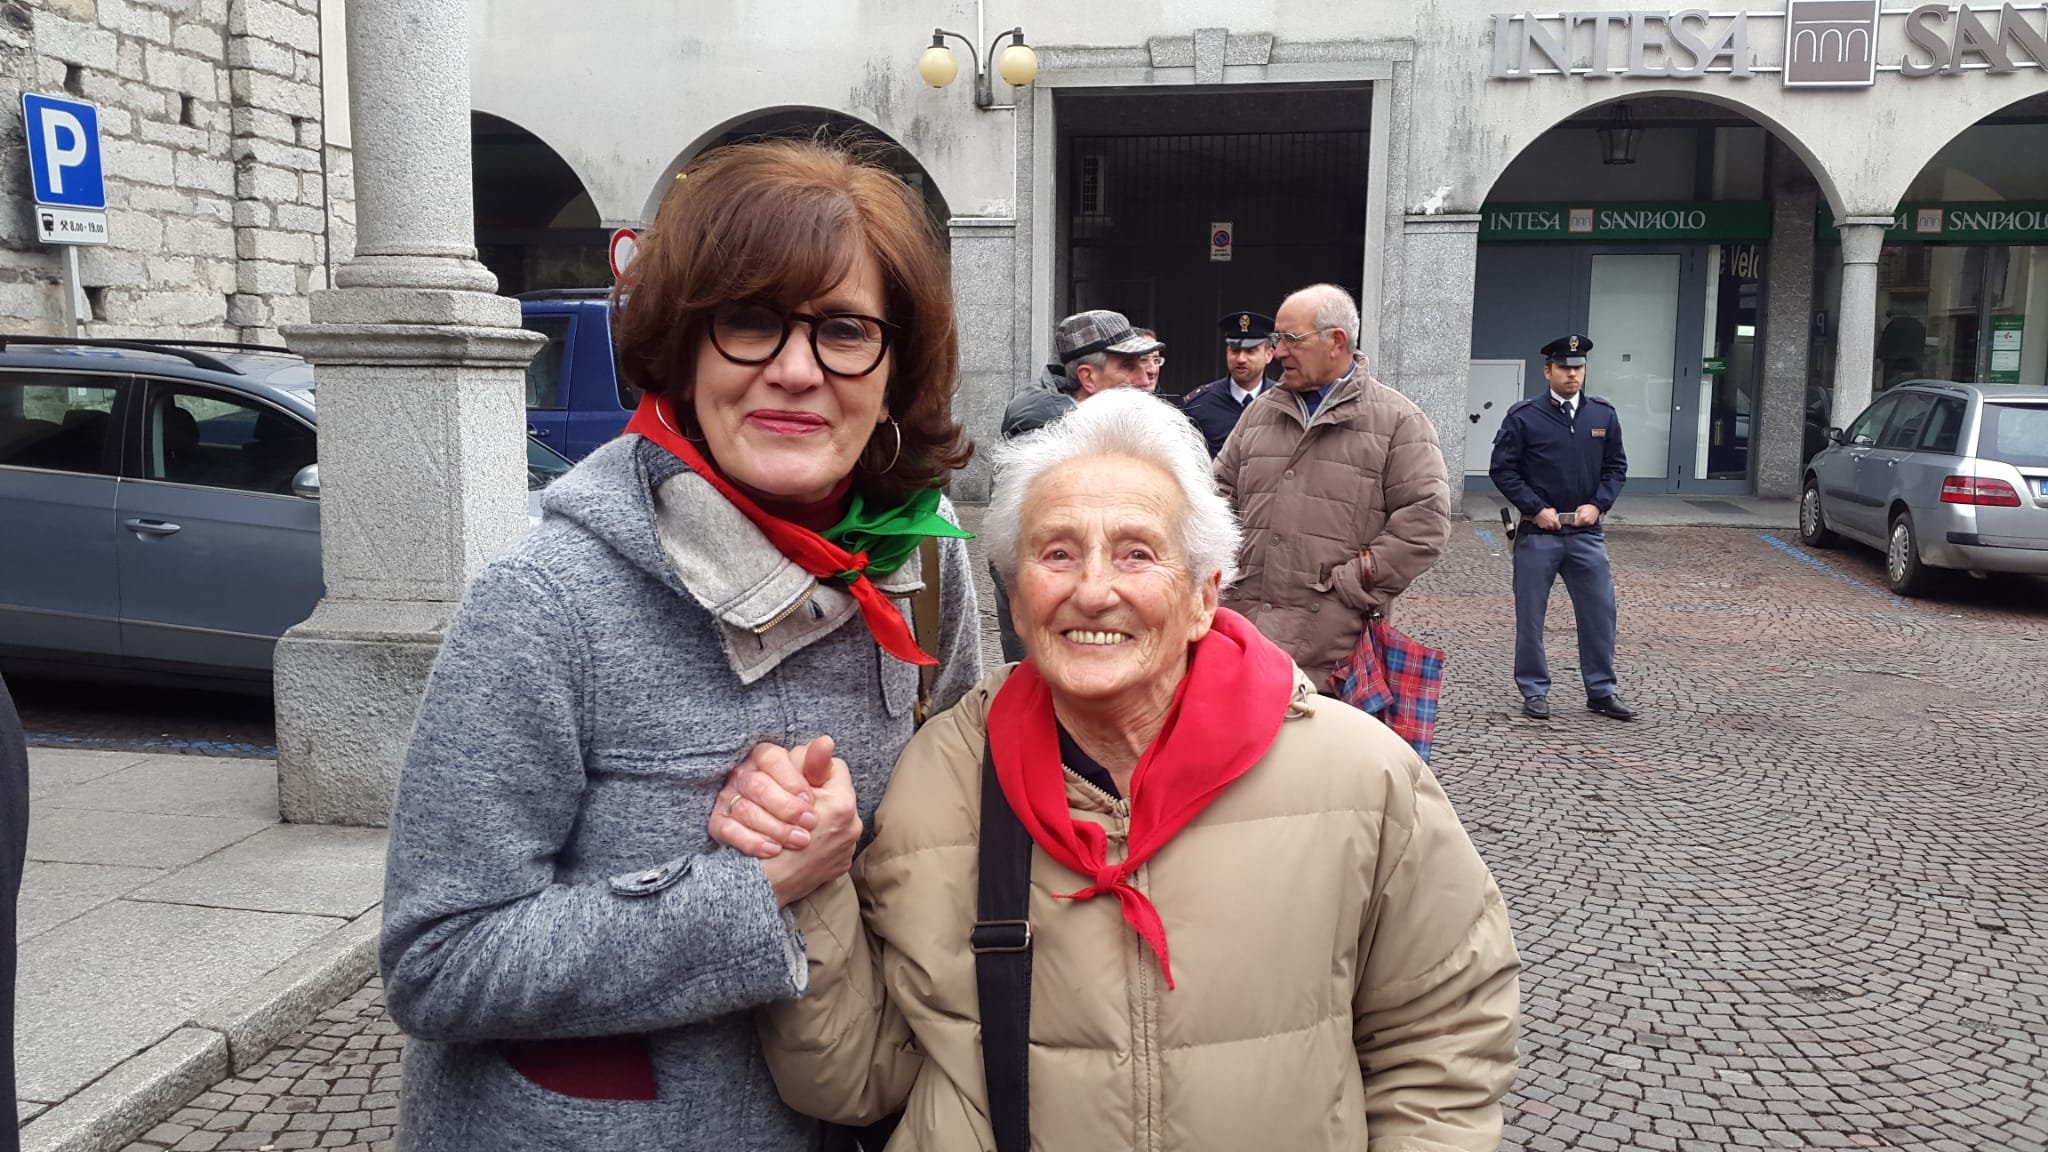 Flavia Filippi e Vanda canna, assolta dopo denuncia foto naziste